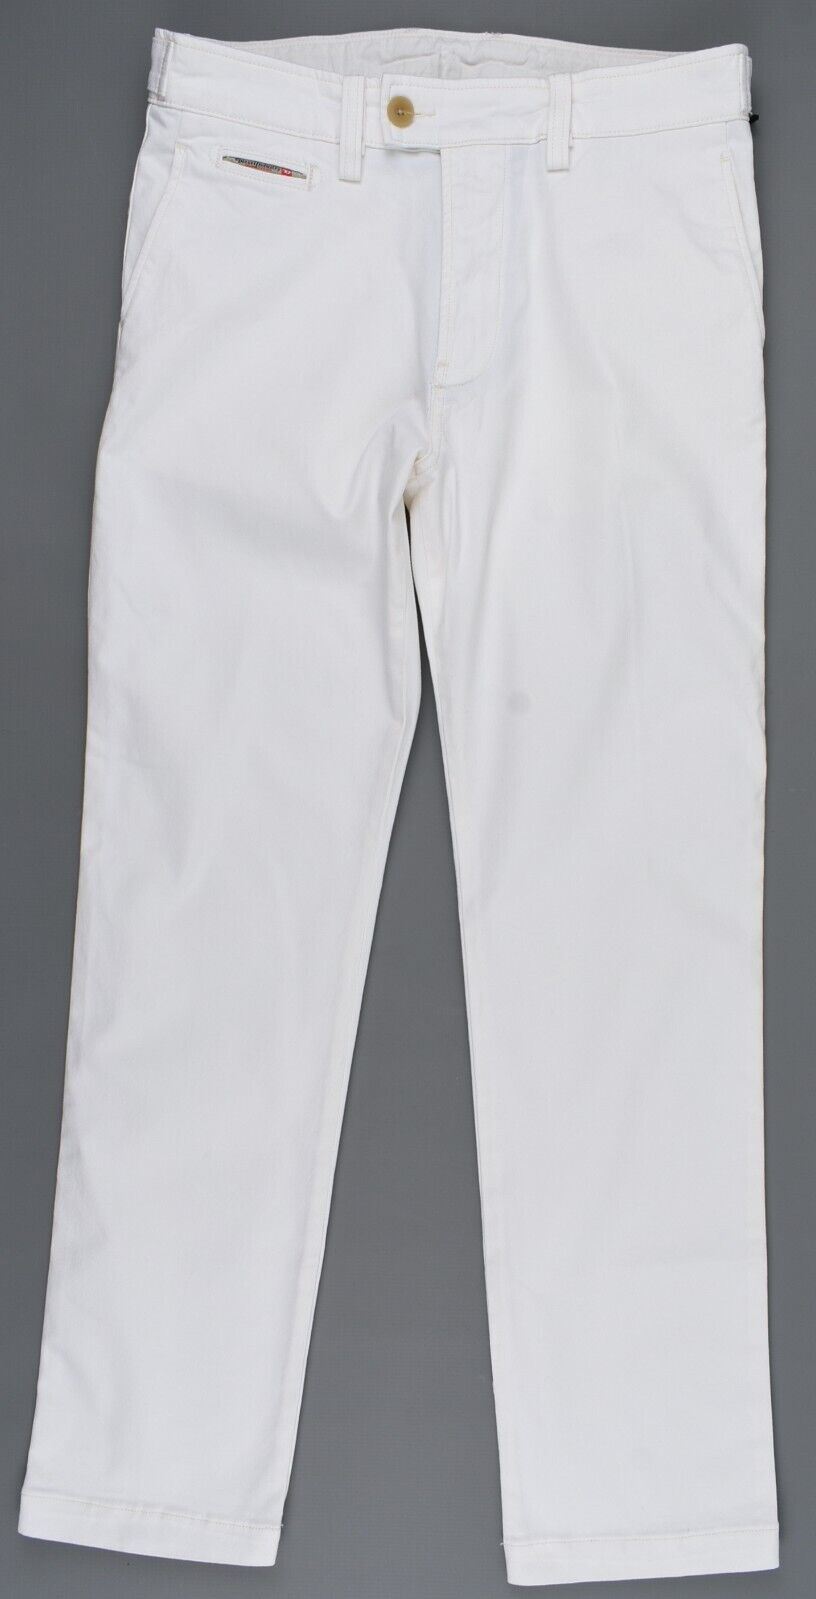 DIESEL Men's CHI-BREED Denim Jeans Pants, Ecru, size W29